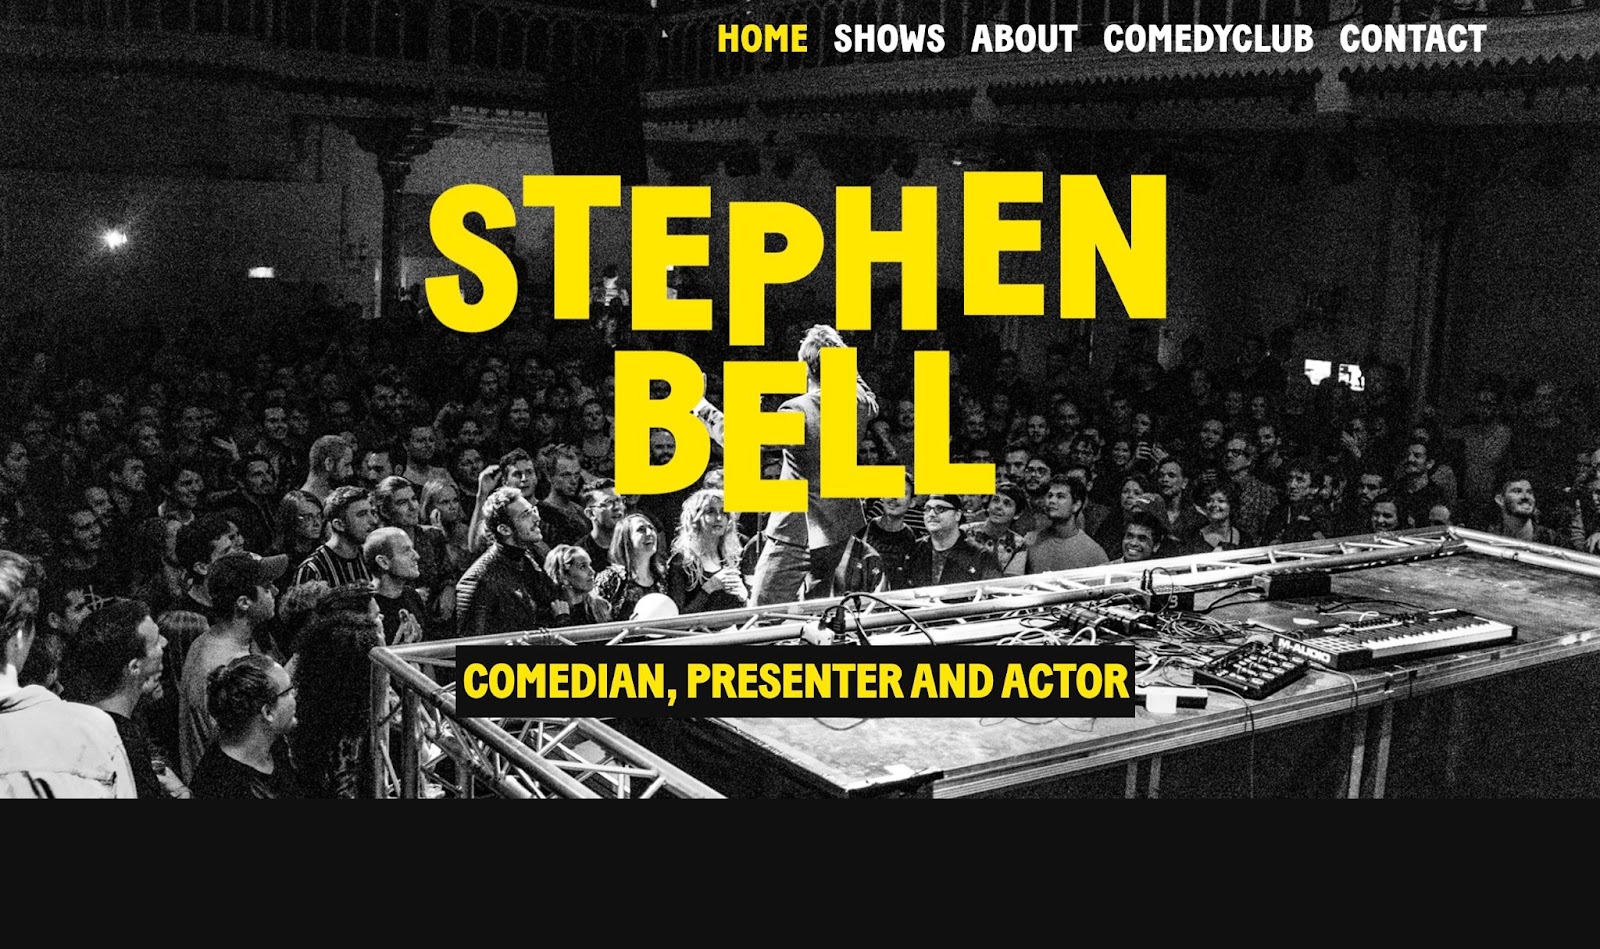 만화 Stephen Bell을 듣고 있는 코미디 군중의 샷입니다. 이미지 위에는 "STEPHEN BELL"이라는 굵은 노란색 텍스트가 있고 그 아래에는 "COMEDIAN, PRESENTER AND ACTOR"라고 쓰여 있습니다.